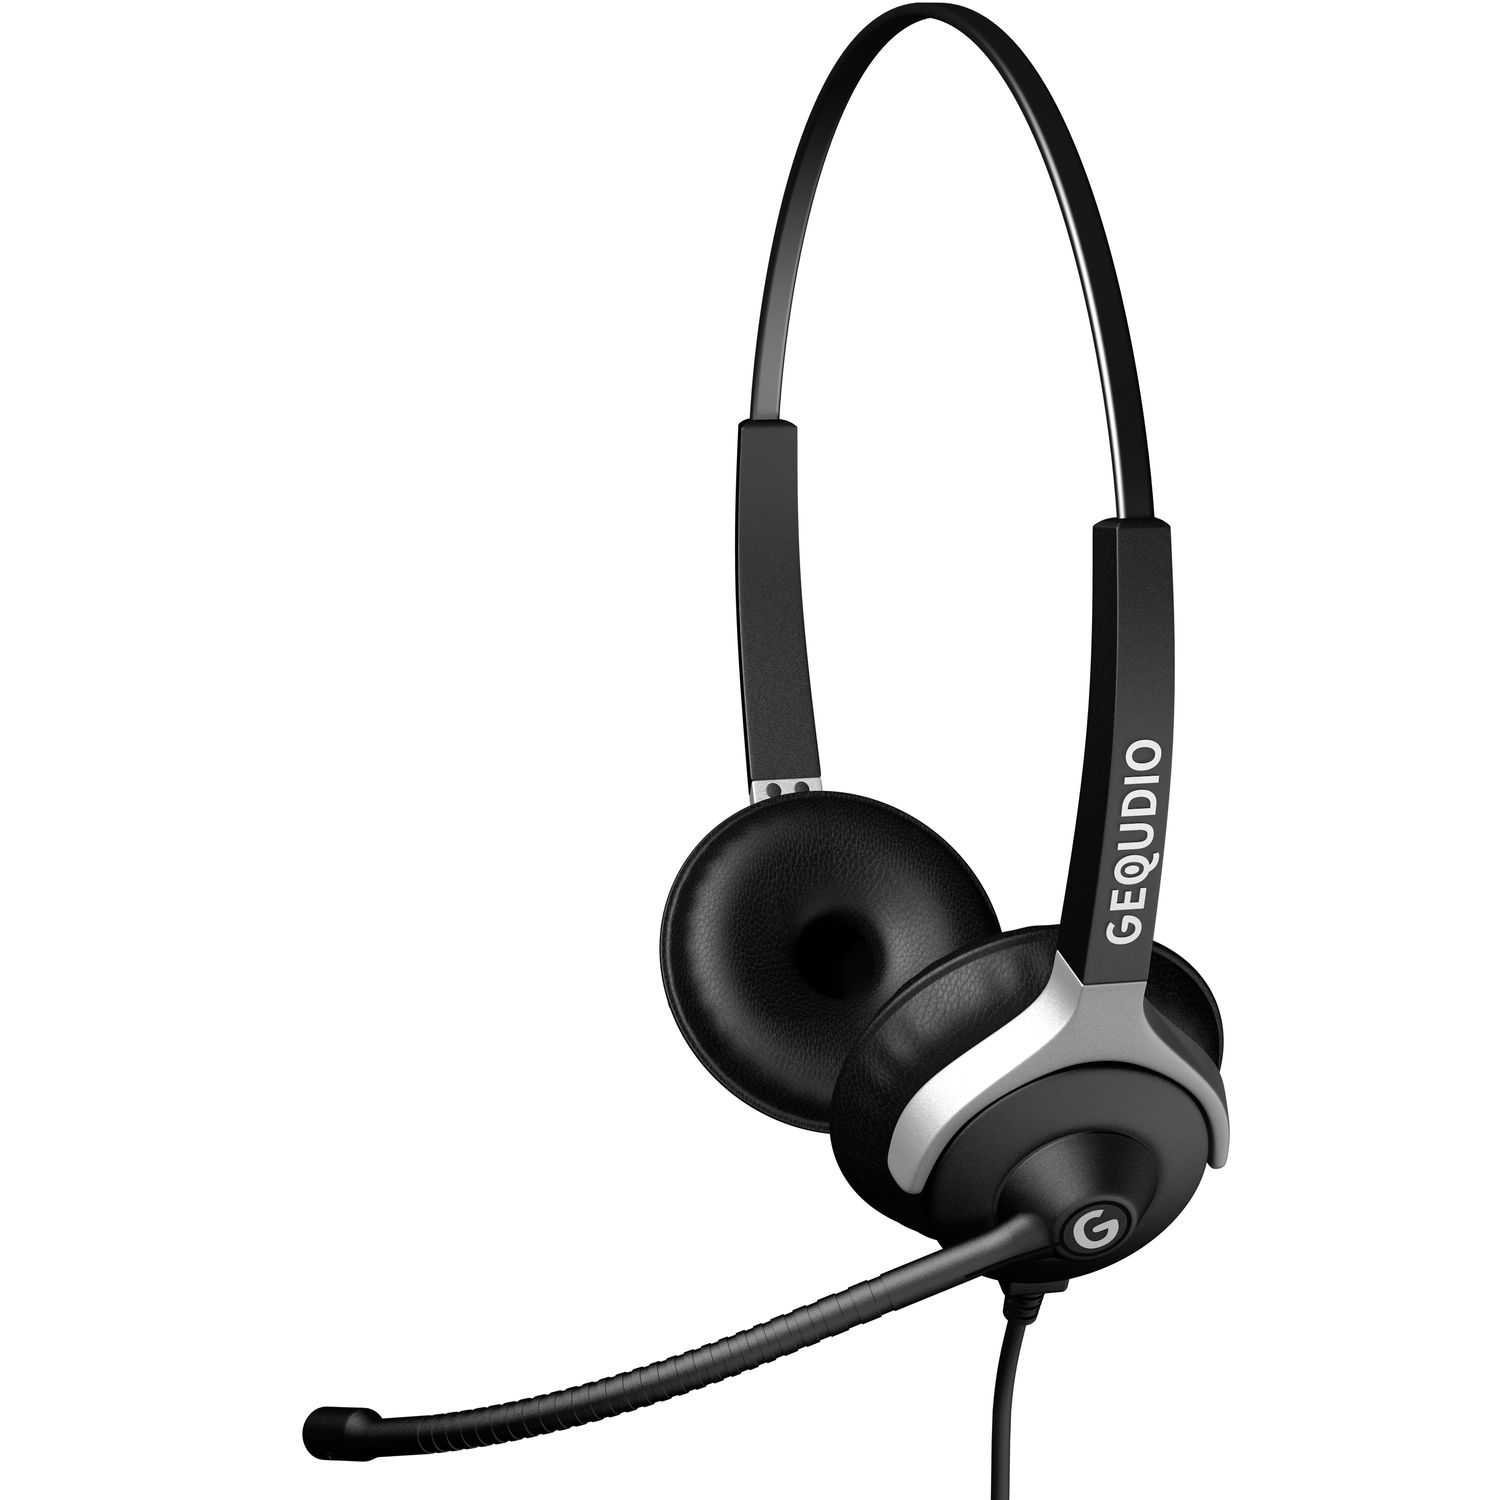 GEQUDIO Headset 2-Ohr für Kabel, Mitel/Aastra/Poly/Gigaset-RJ Headset Schwarz On-ear mit